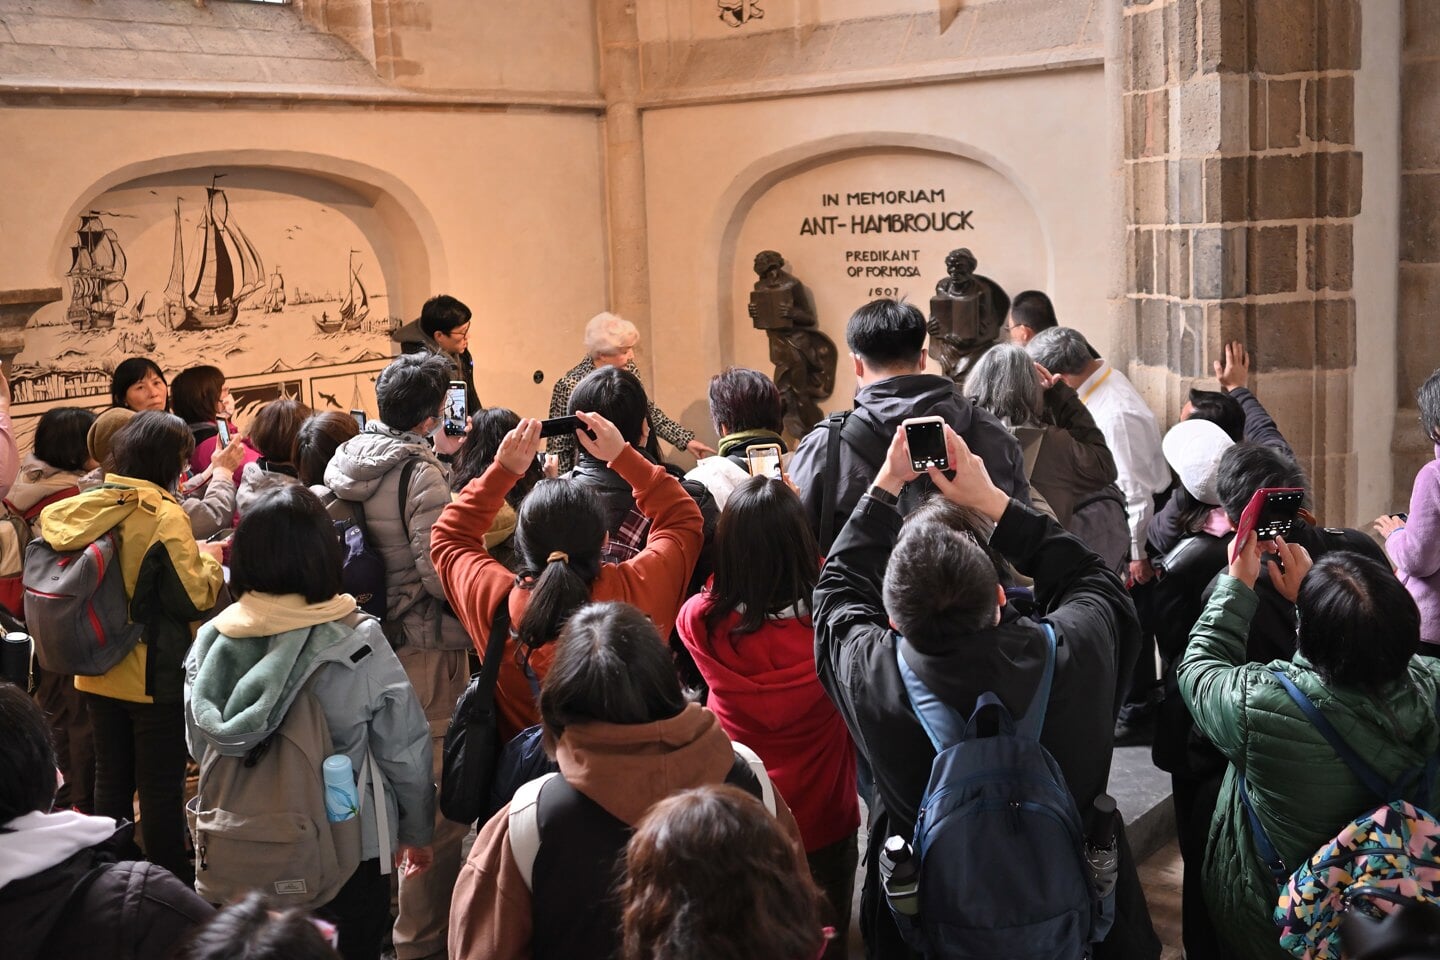 De Taiwanese bezoekers verdringen zich met hun camera's voor het herdenkingsmonument van Hambrouck in de Laurenskerk.